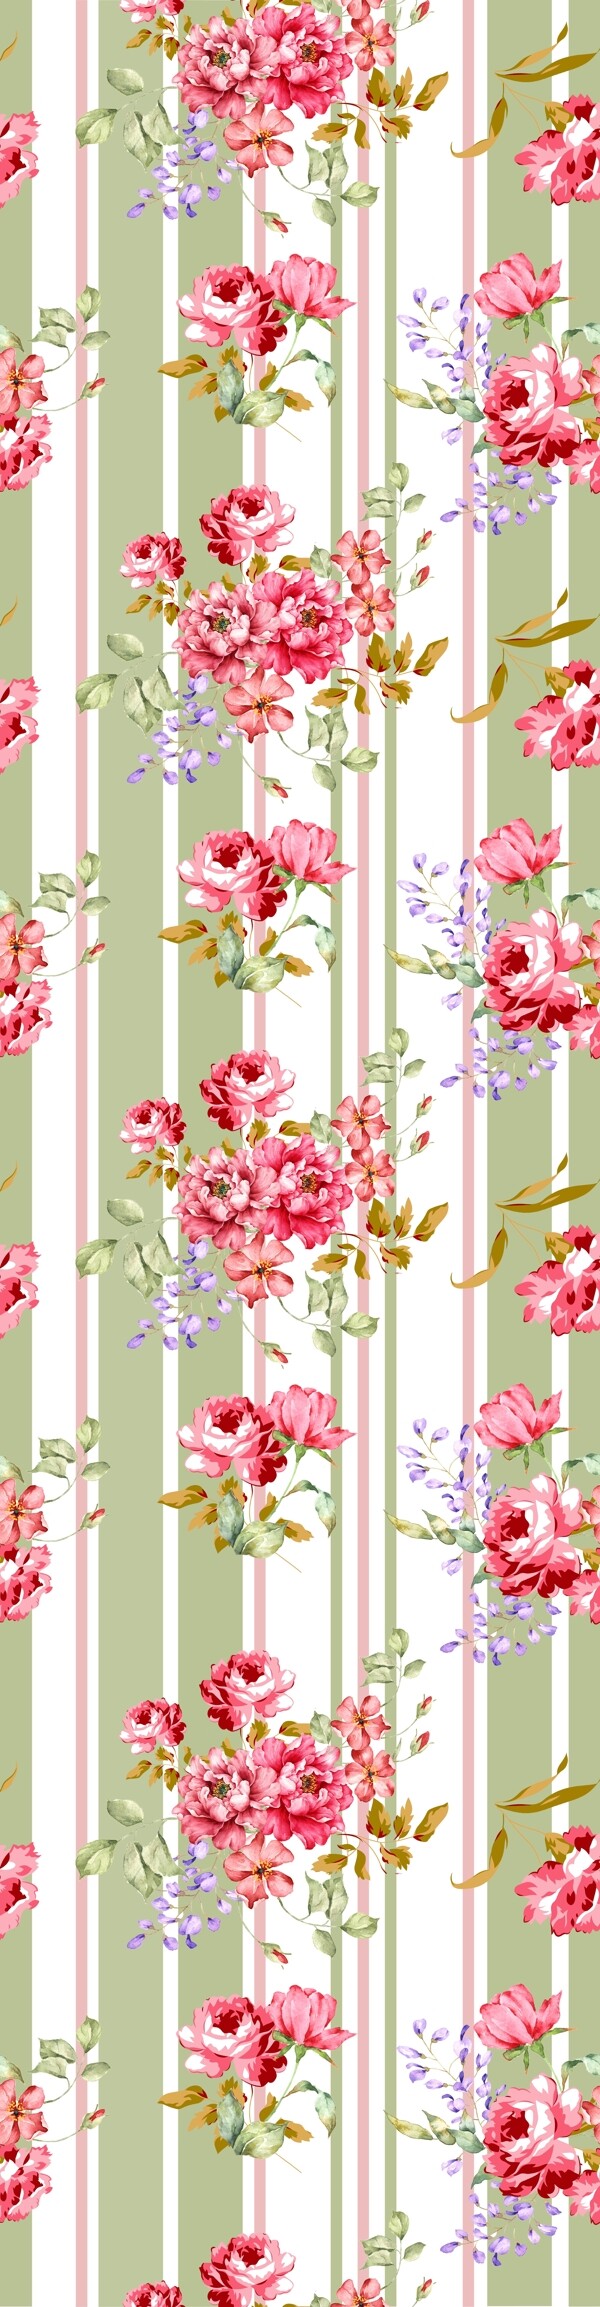 纺织品软装饰图案设计花卉